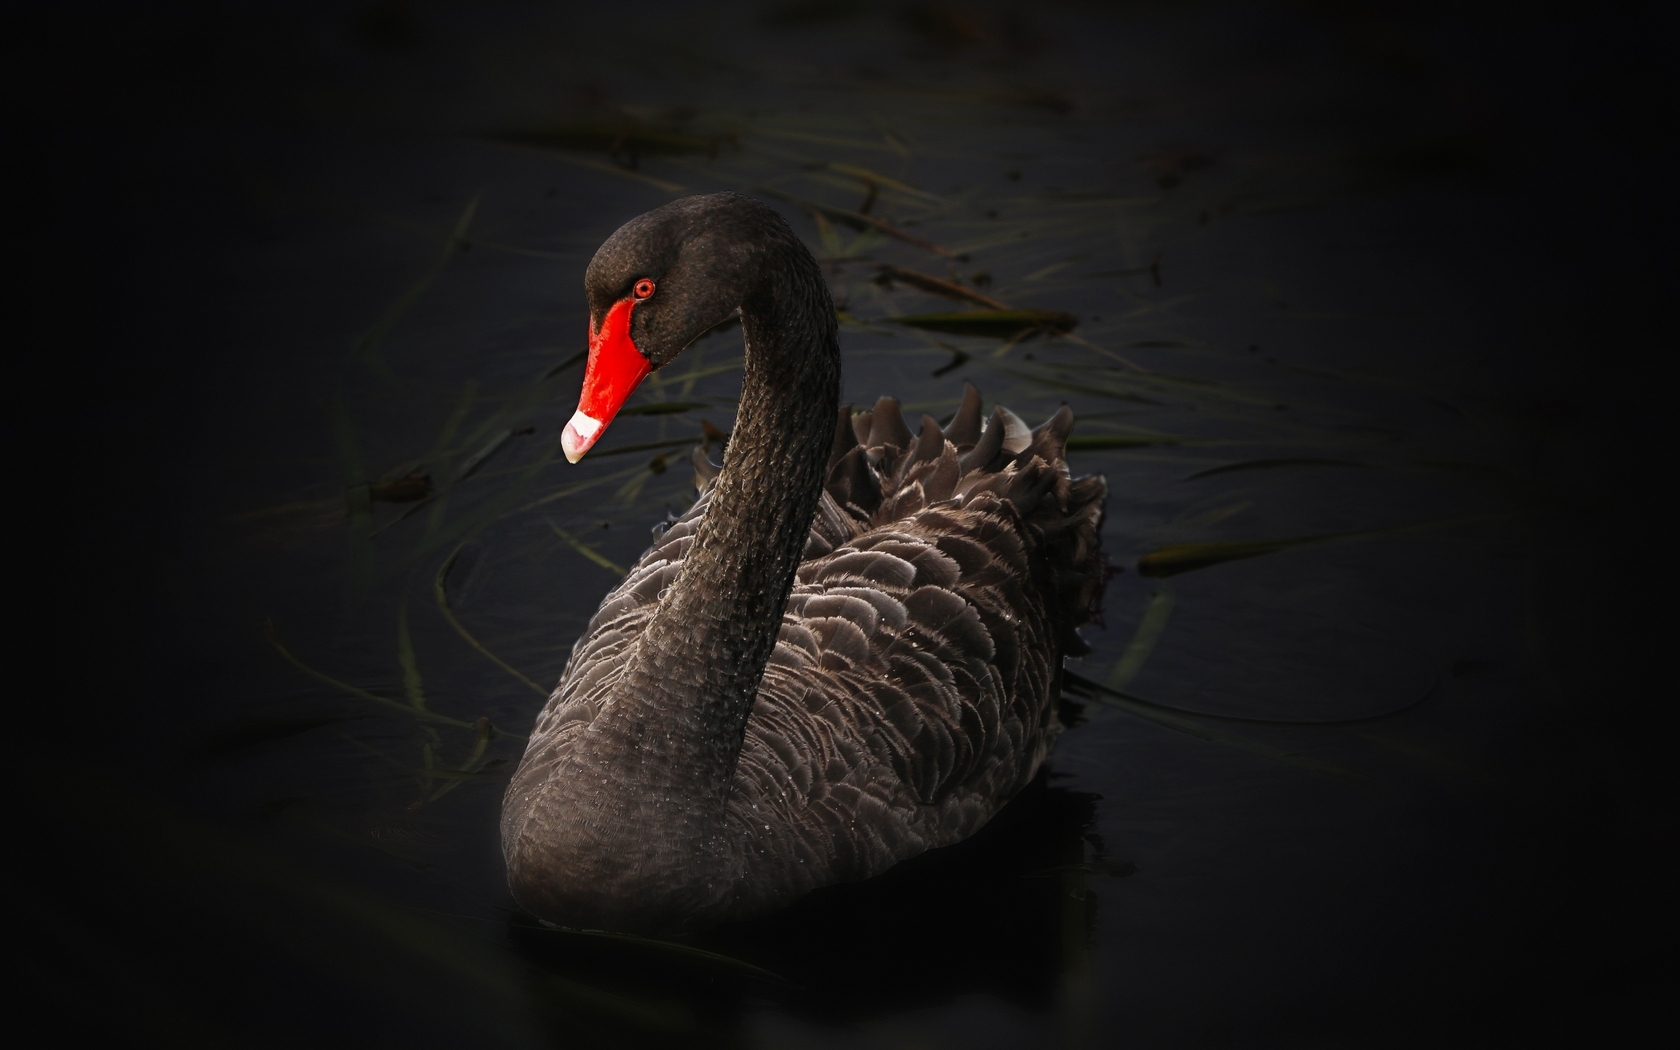 Image: Bird, black swan, water, grass, red, beak, blackout